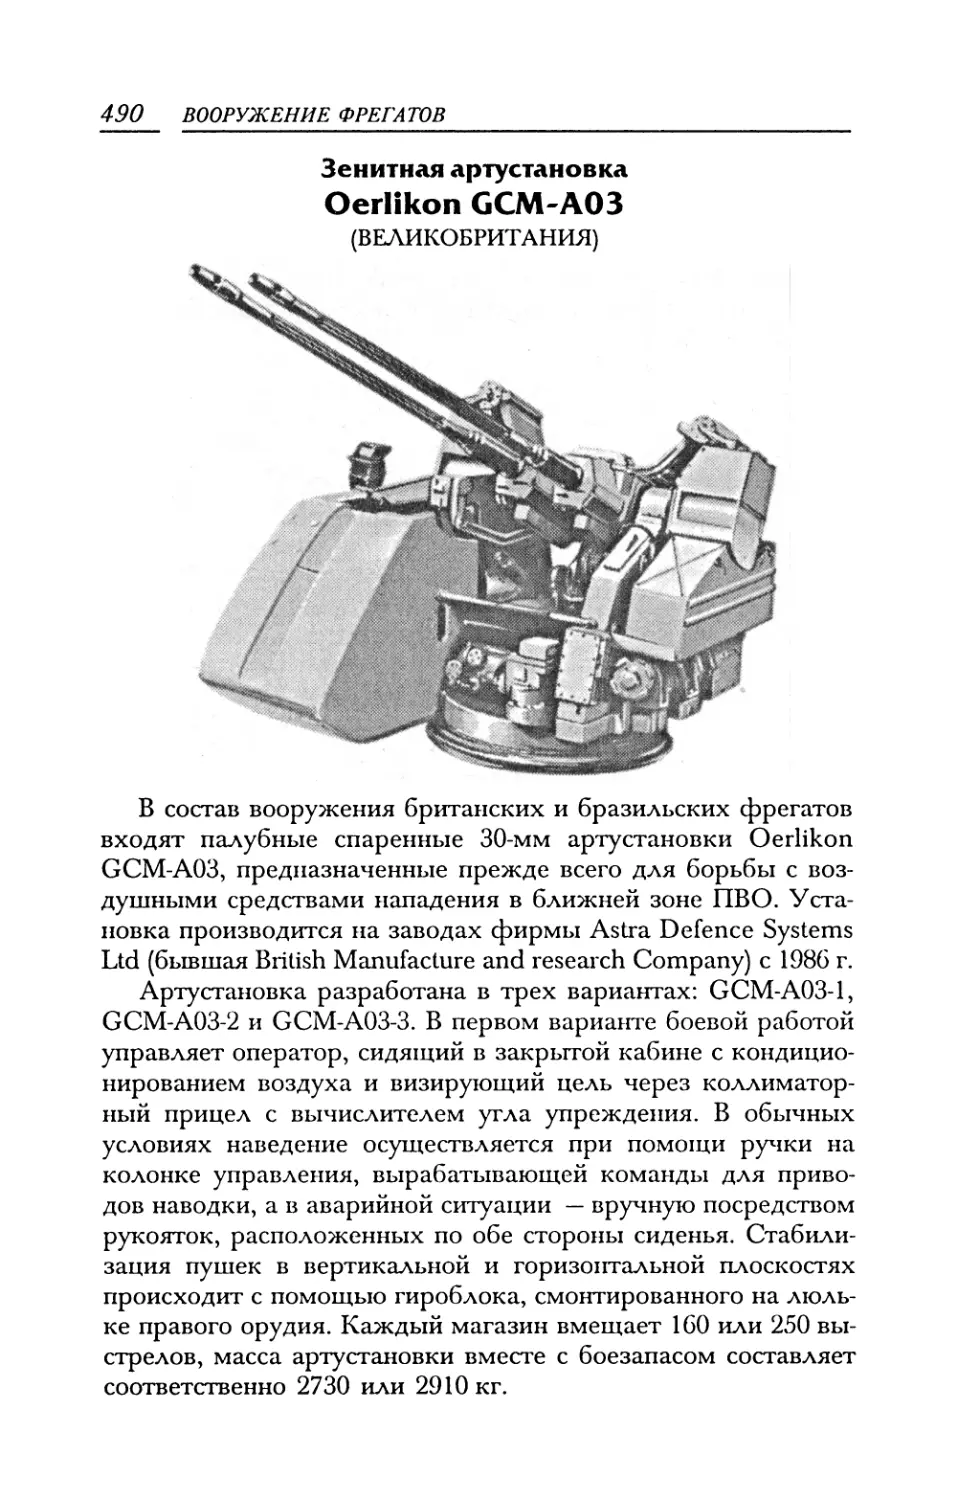 Зенитная артустановка Oerlikon GCM-A03